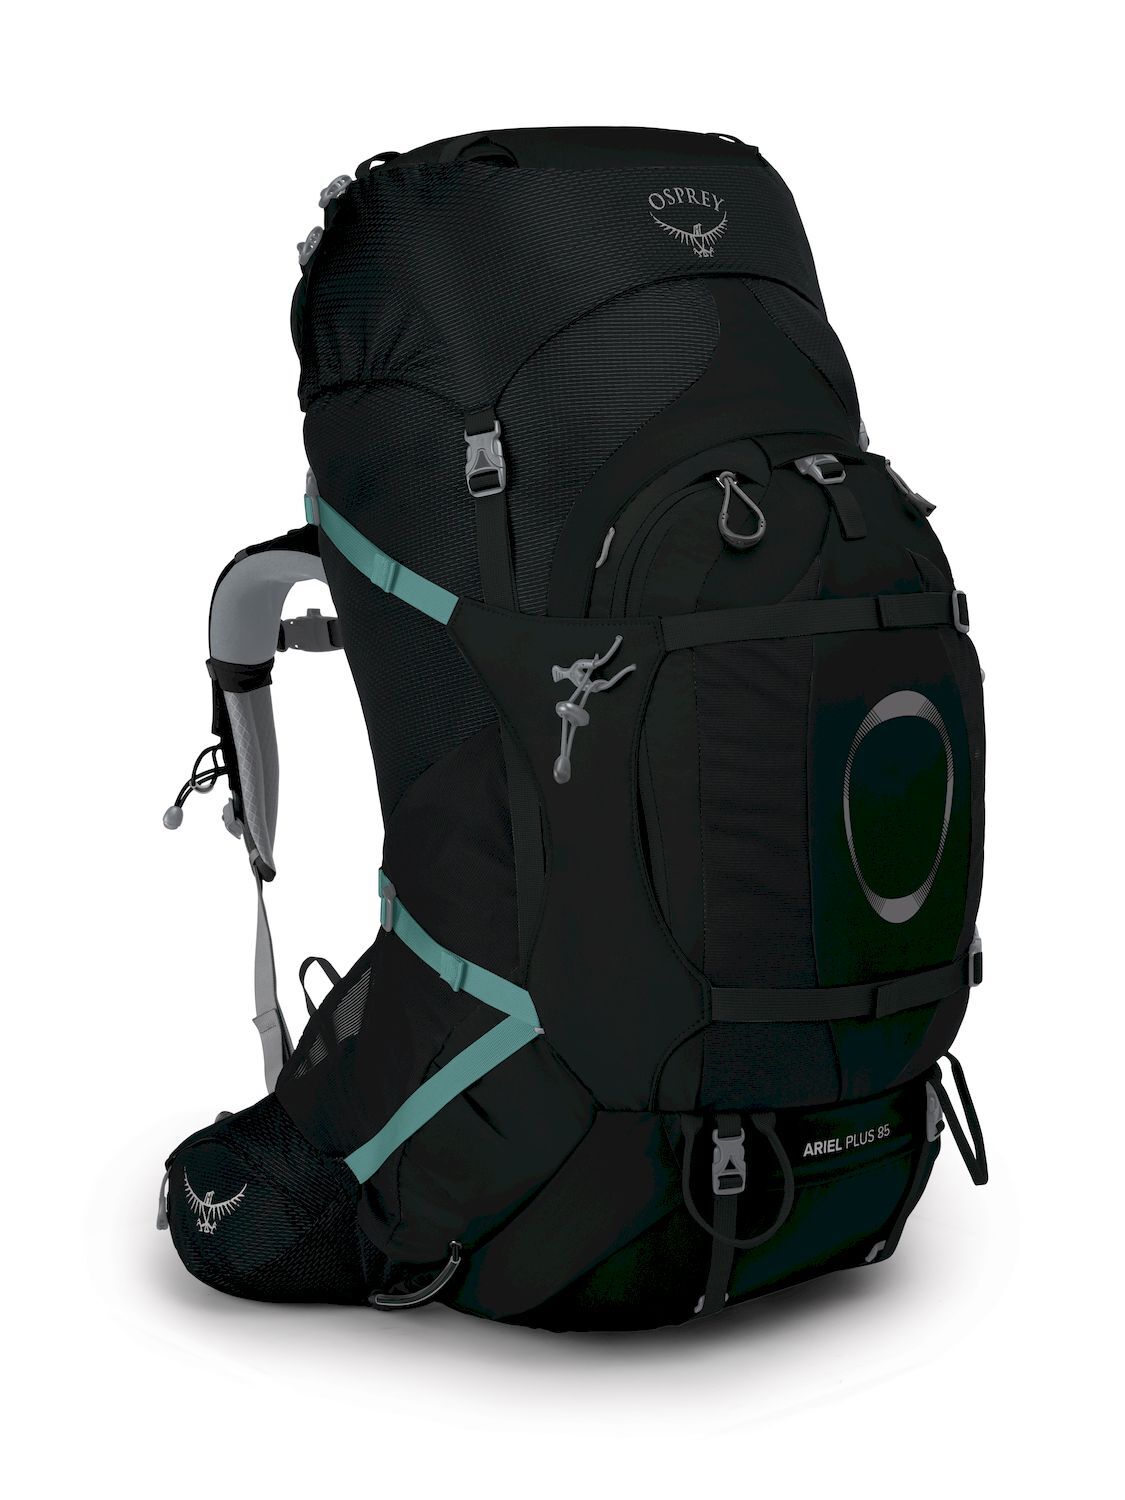 Osprey Ariel Plus 85 - Hiking backpack - Women's